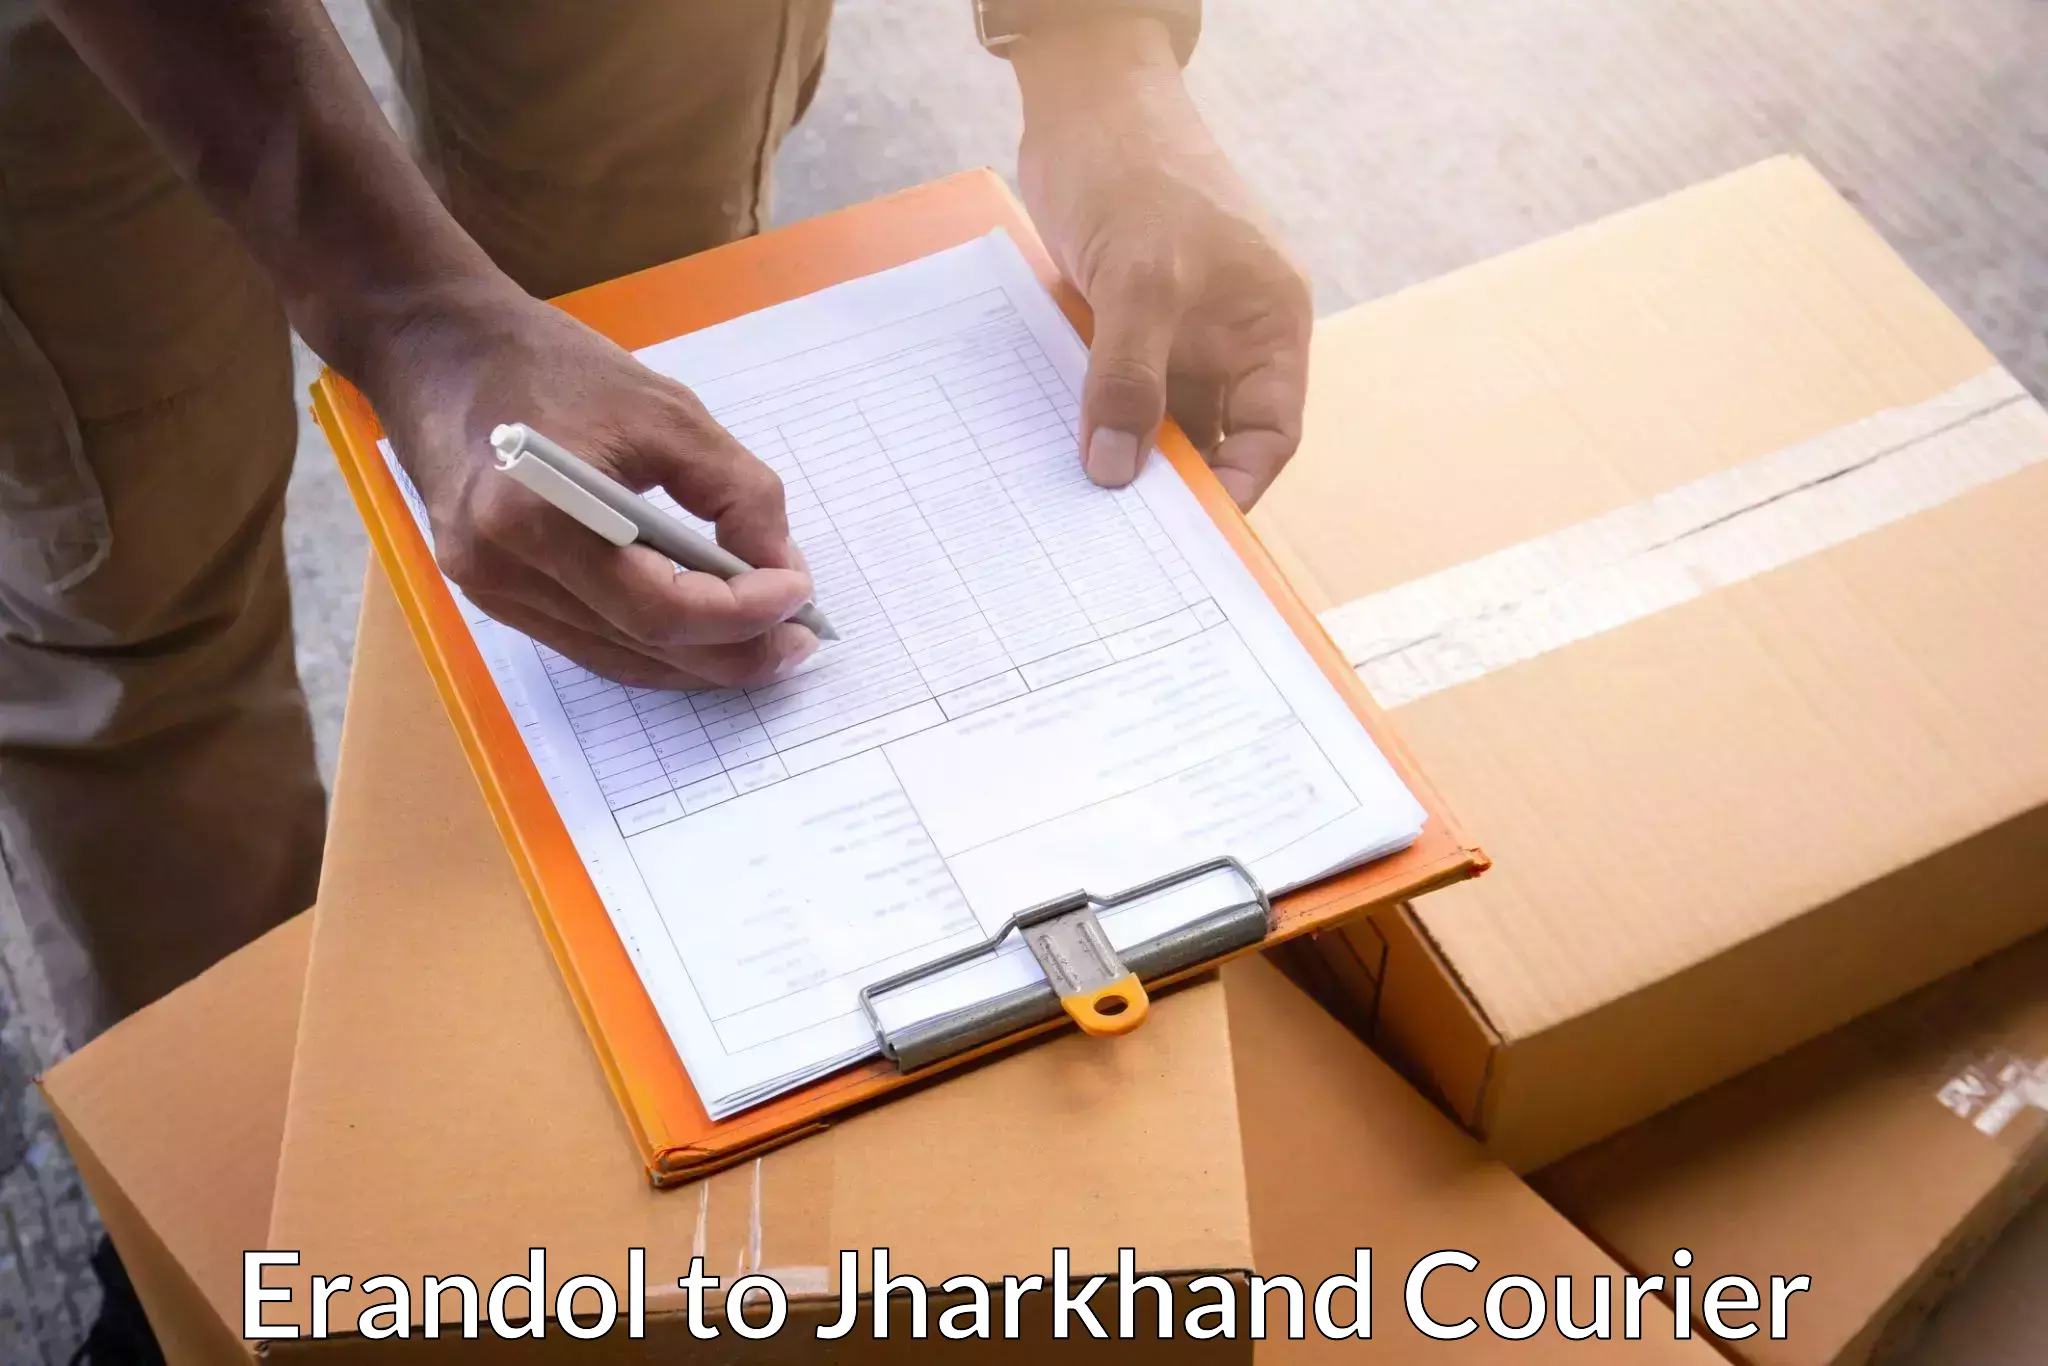 Door-to-door shipment in Erandol to IIT Dhanbad